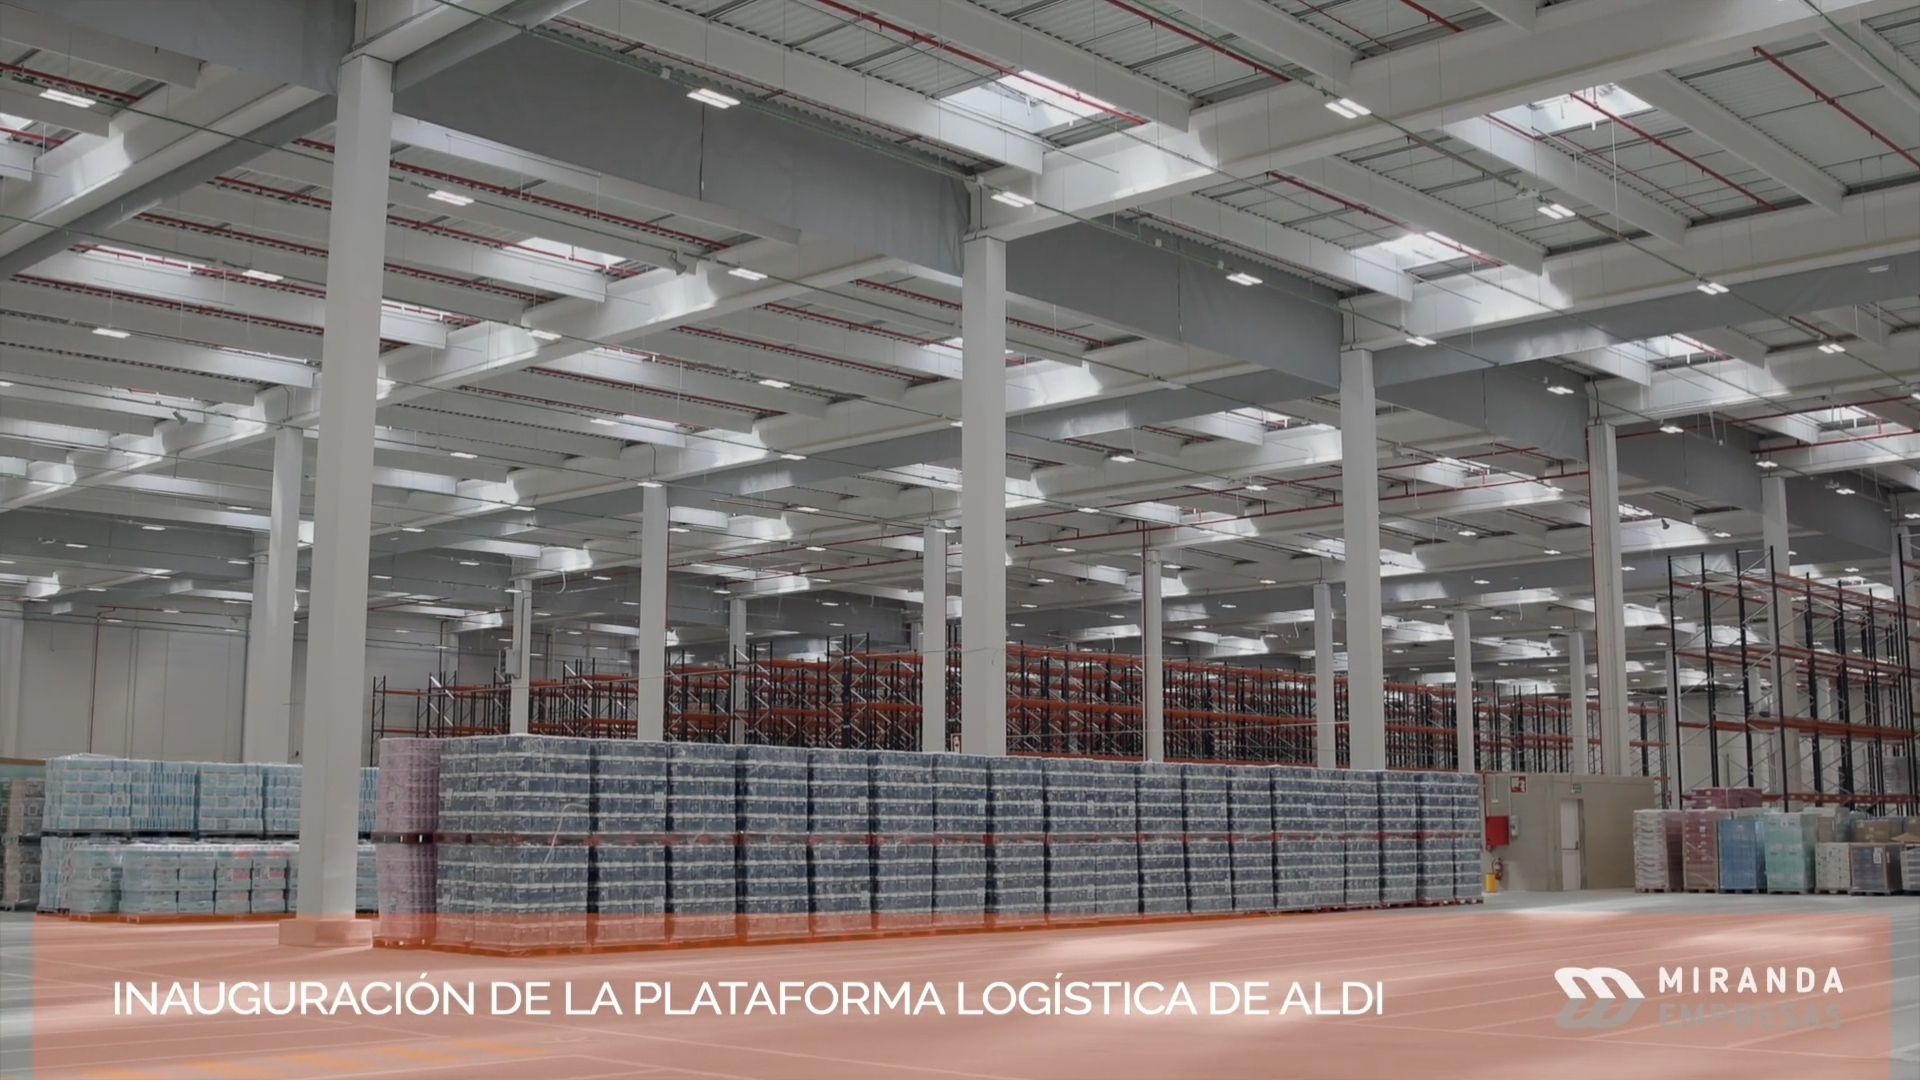 Inauguración de la Plataforma Logística de Aldi en Miranda de Ebro